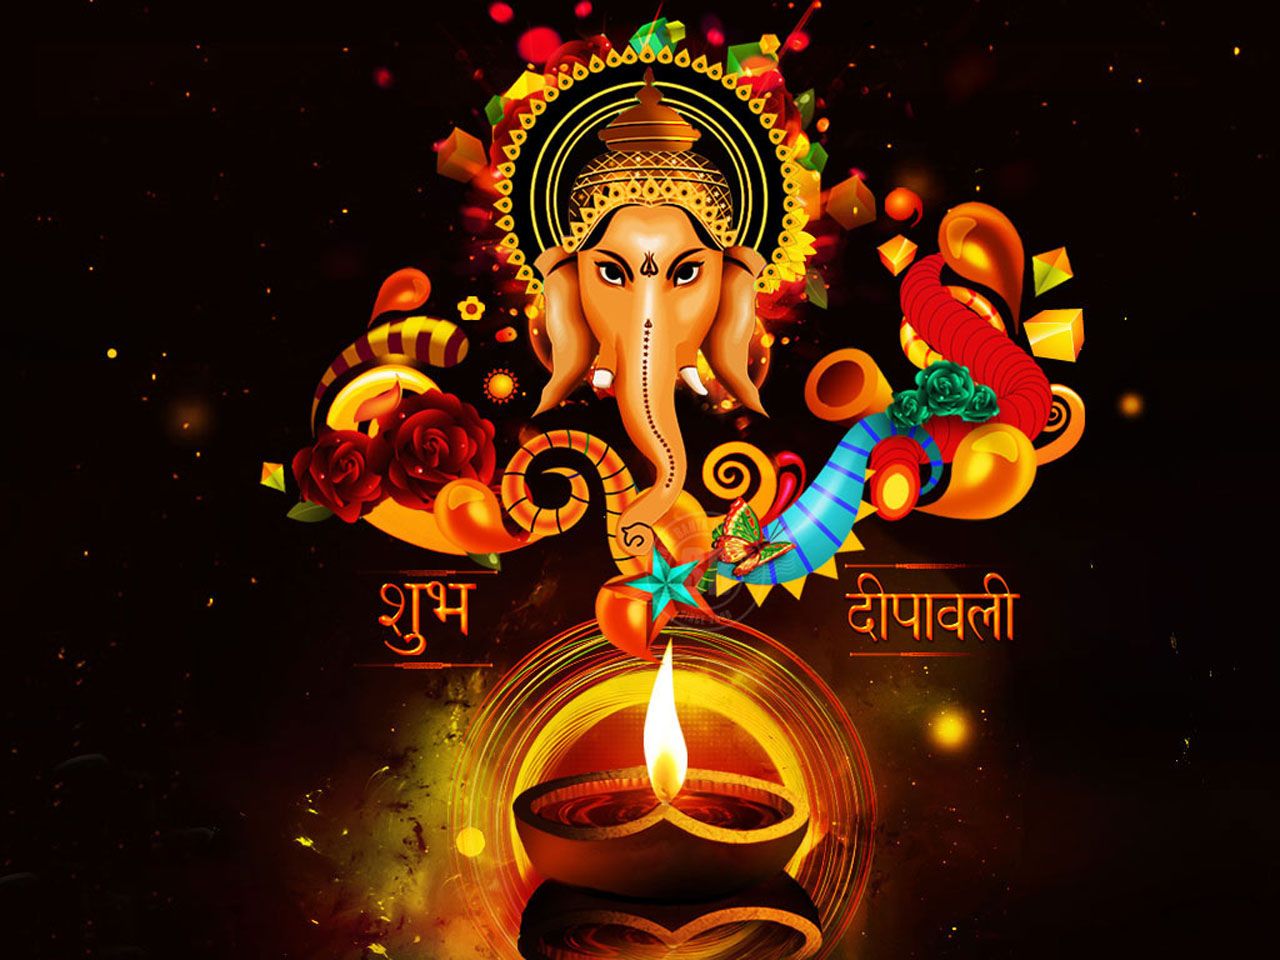 Beautiful Diwali Wallpaper for your desktop